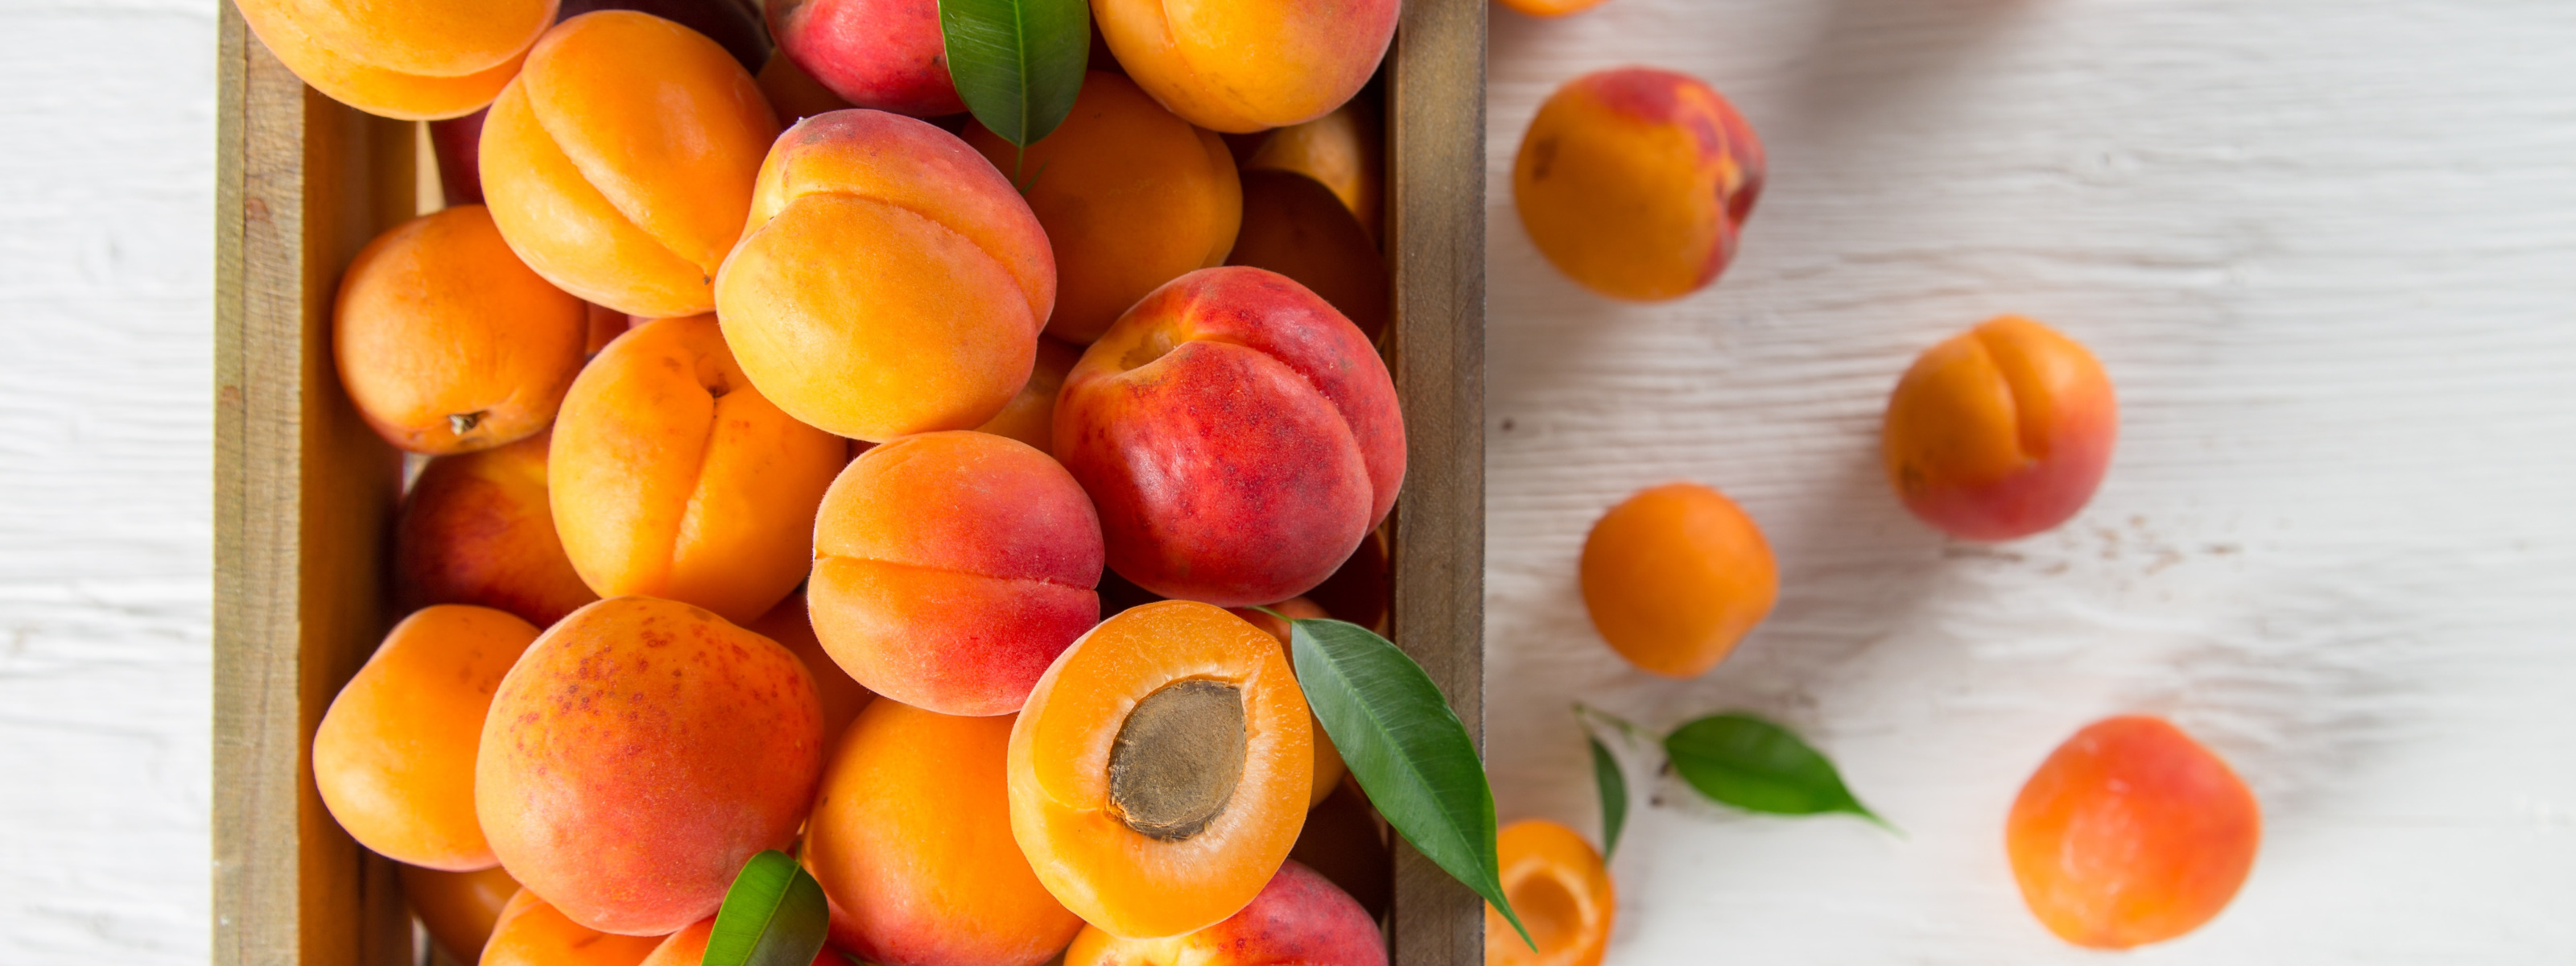 Фото абрикосов и персиков. Абрикос оранж. Абрикос Шалах. Абрикос, алыча персик зеленый. Абрикос базилик мандарин.